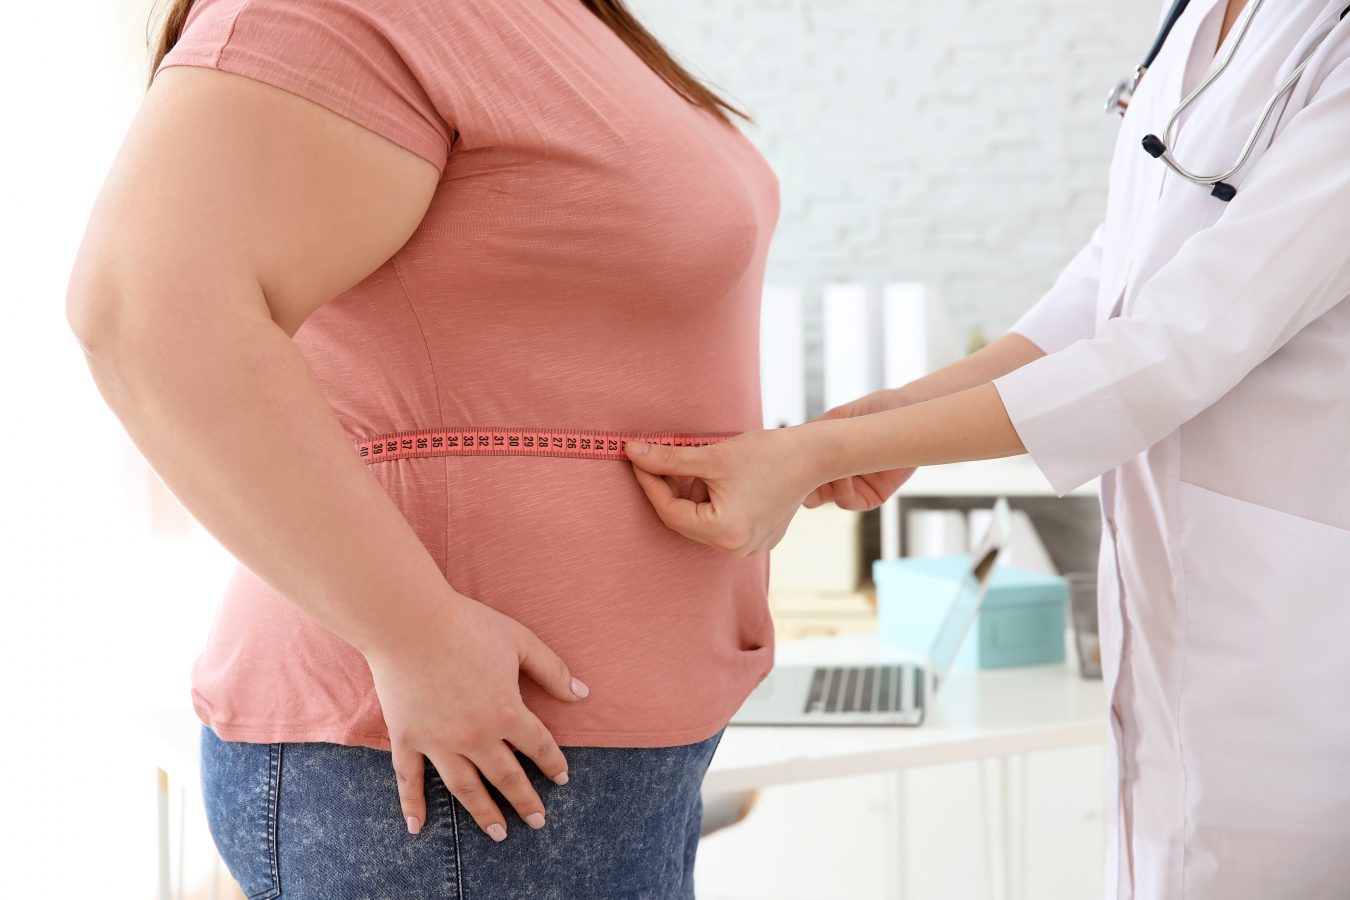 obez însărcinată trebuie să piardă în greutate